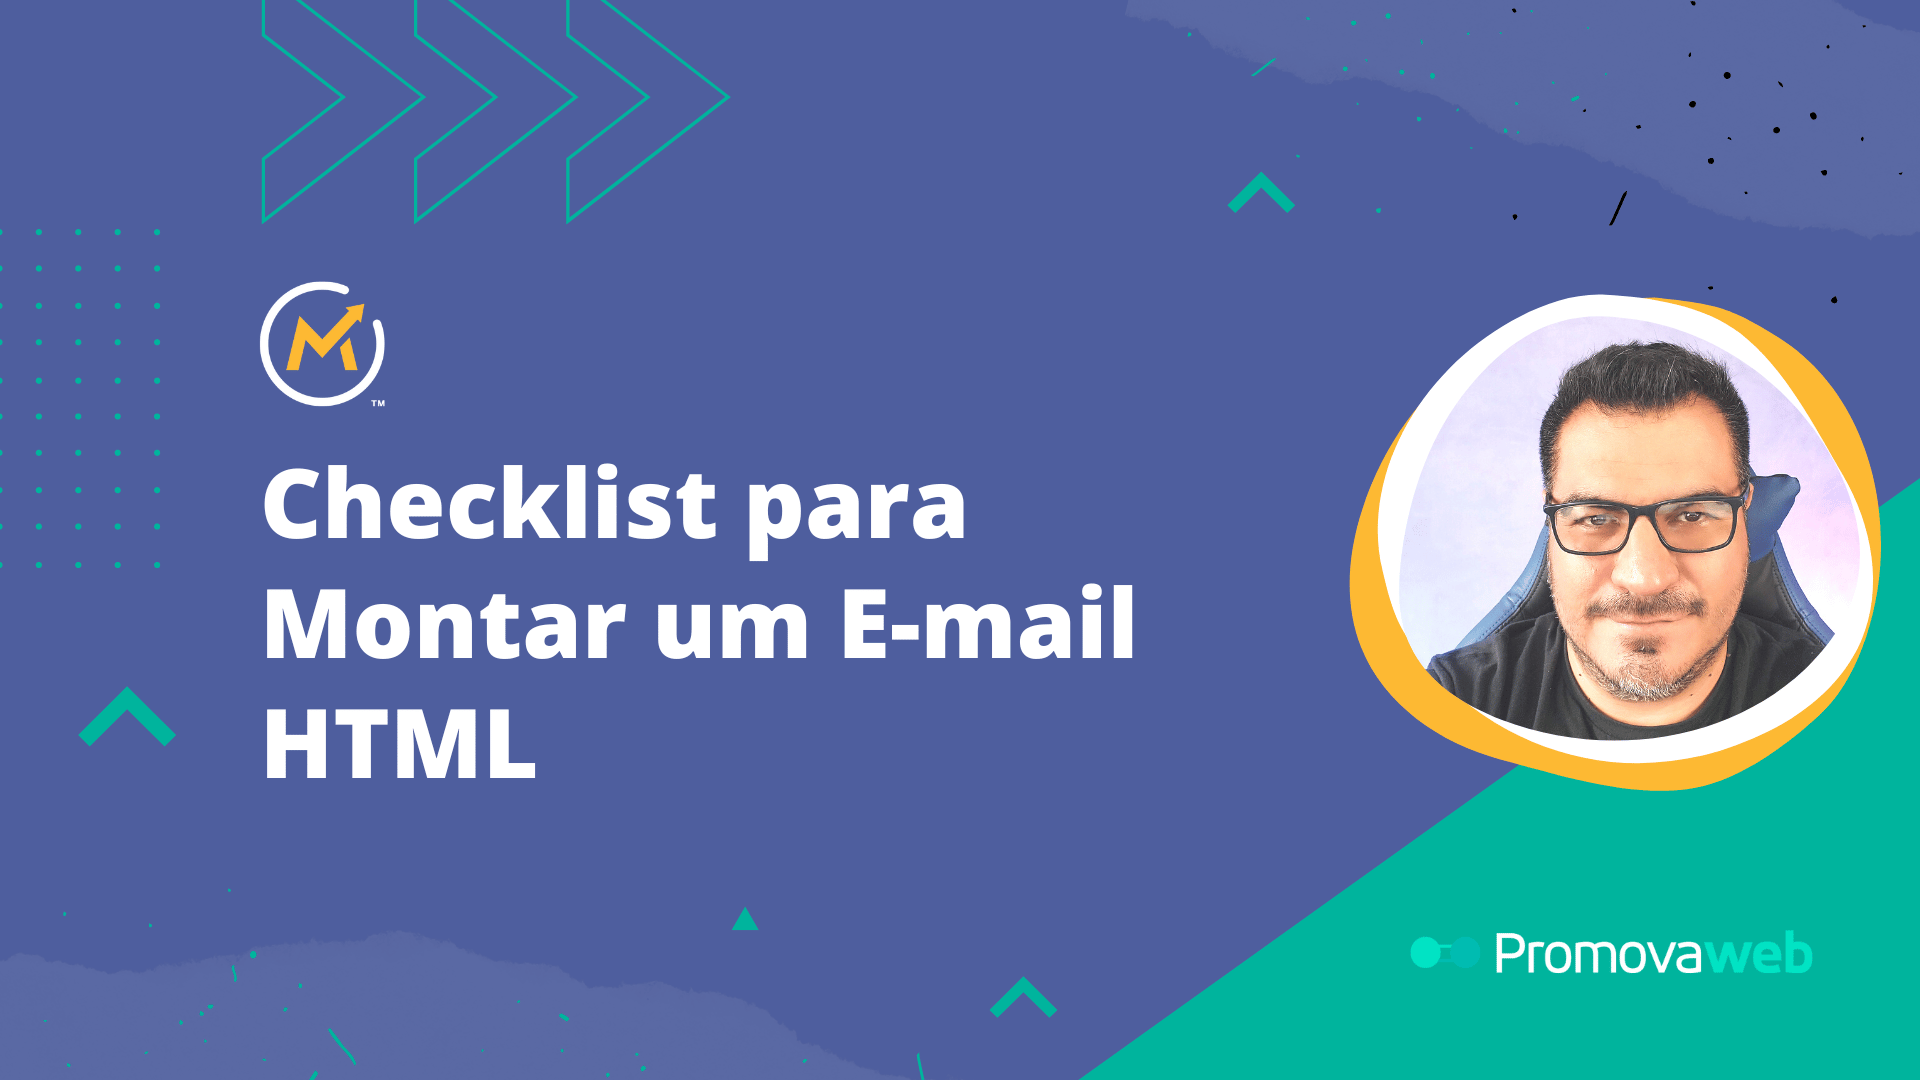 Checklist para Montar um E-mail HTML